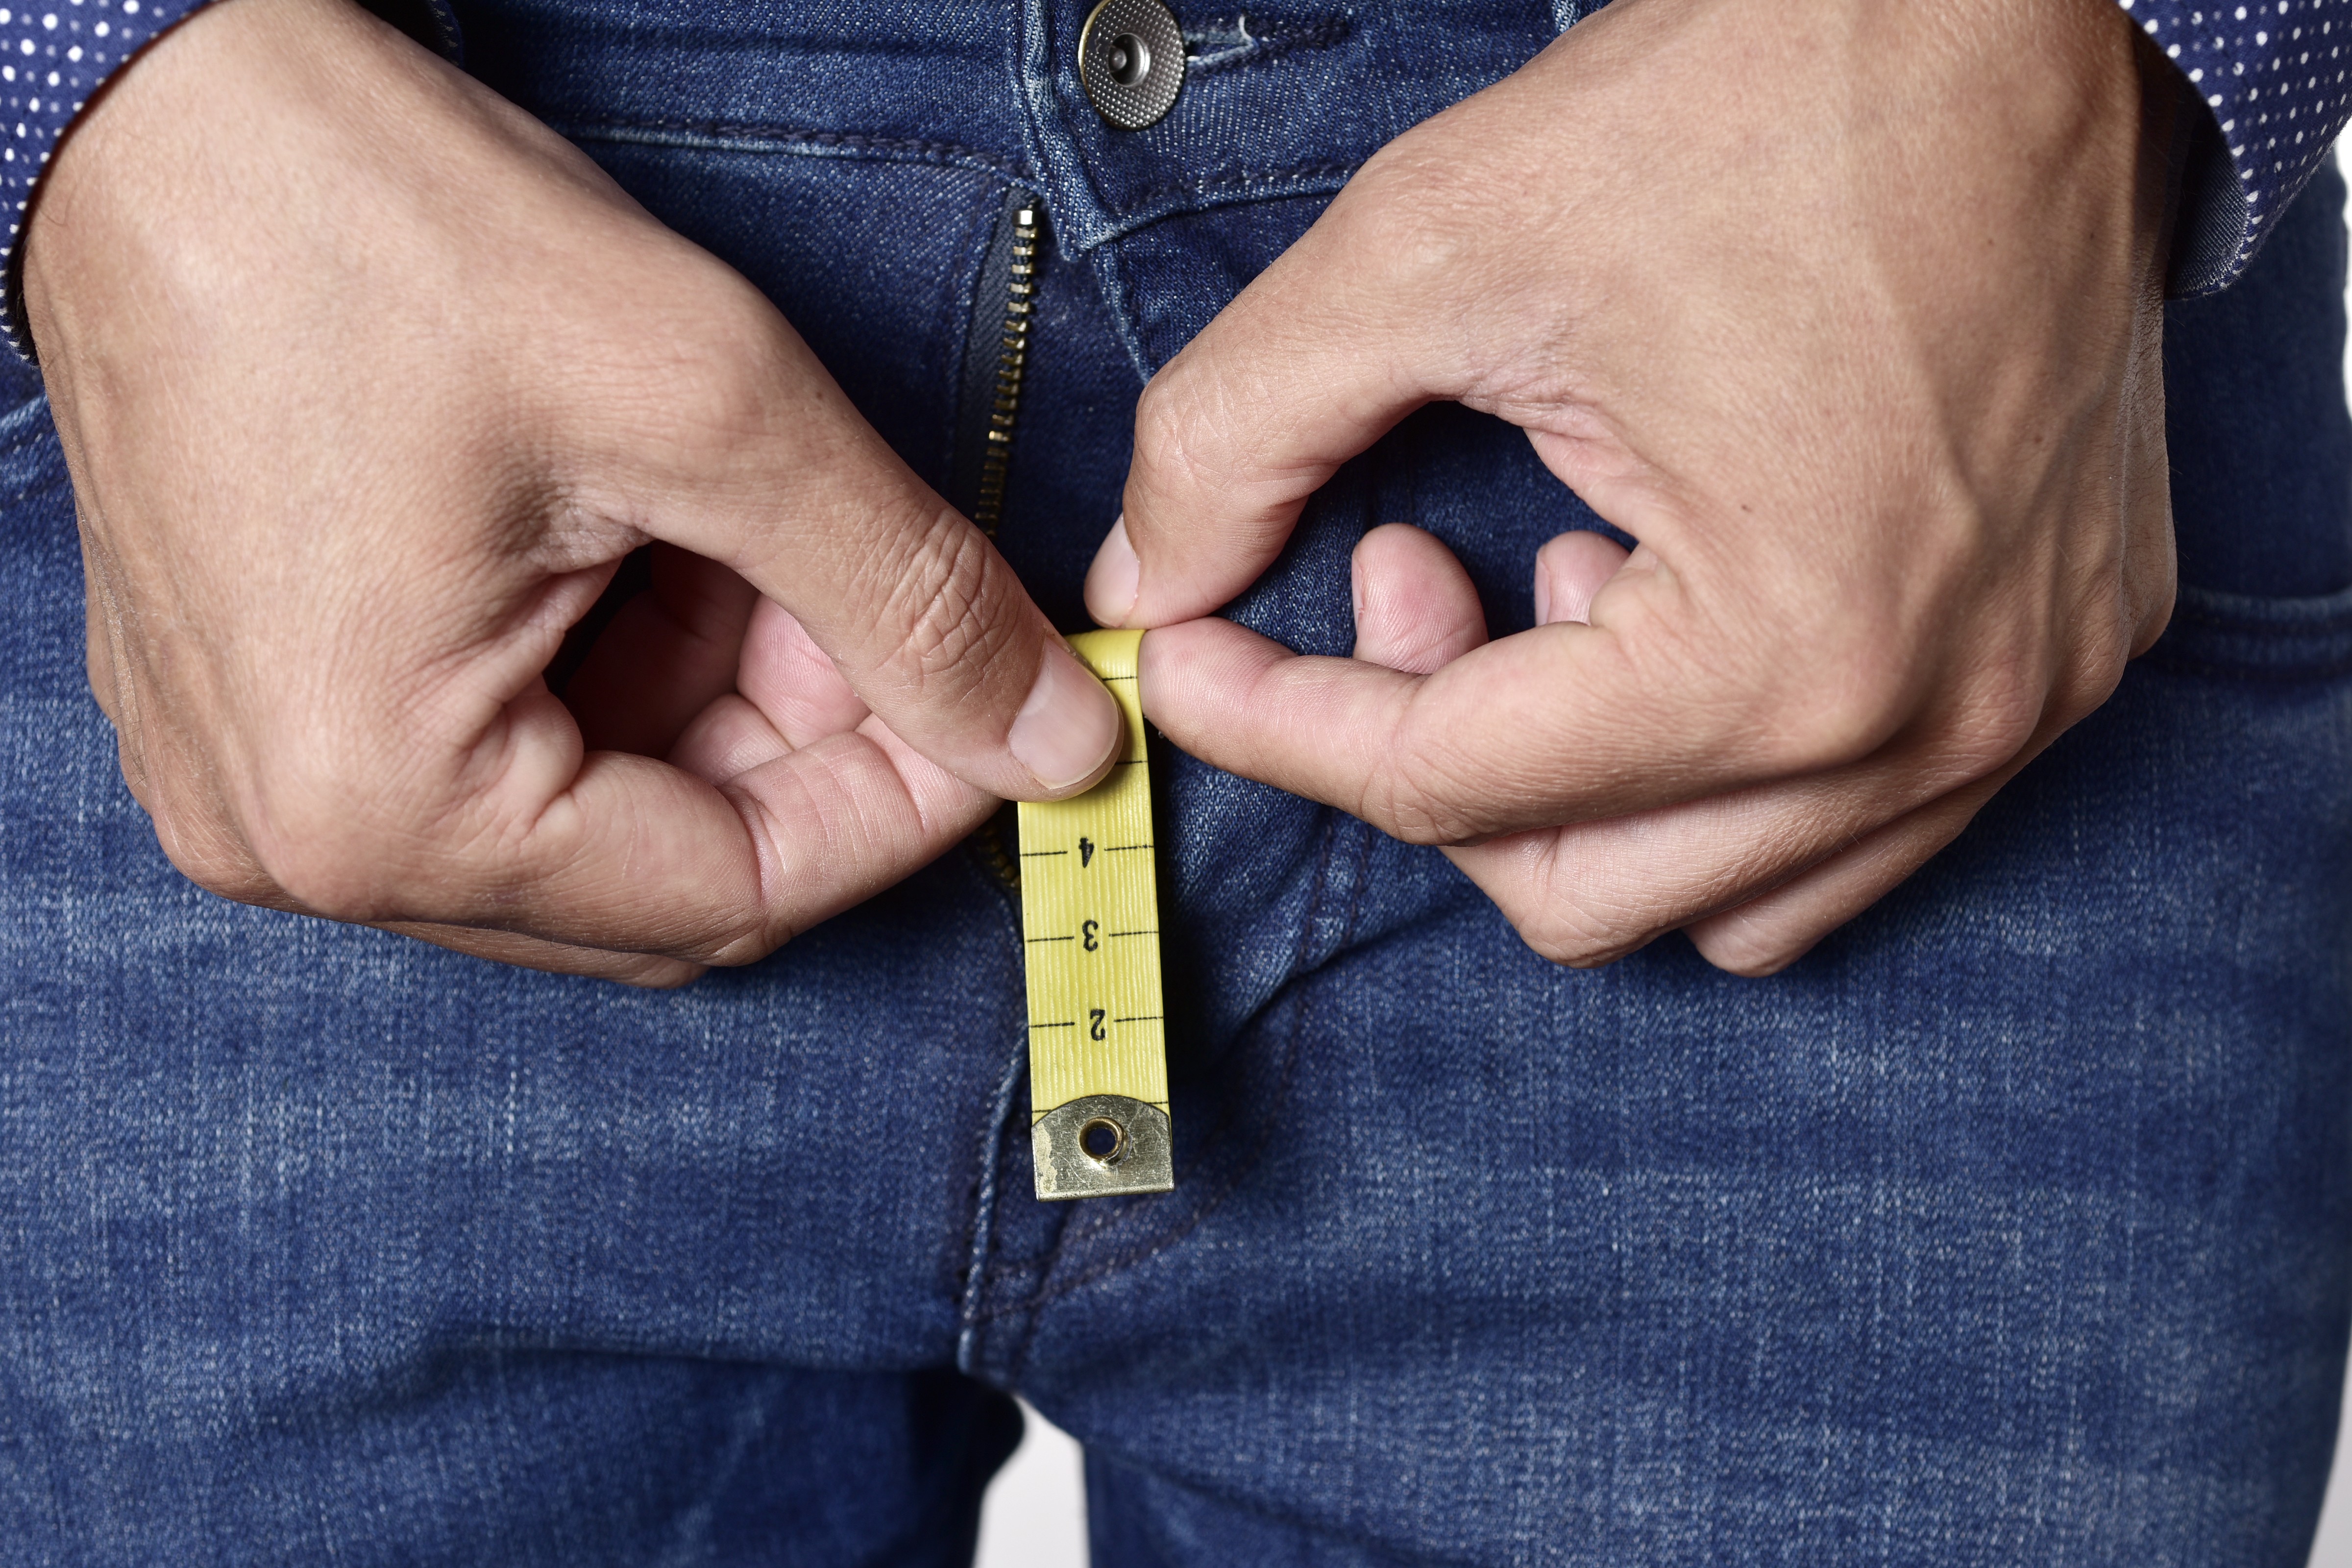 Homem segura fita métrica que sai da braguilha de sua calça (Foto: Getty Images)